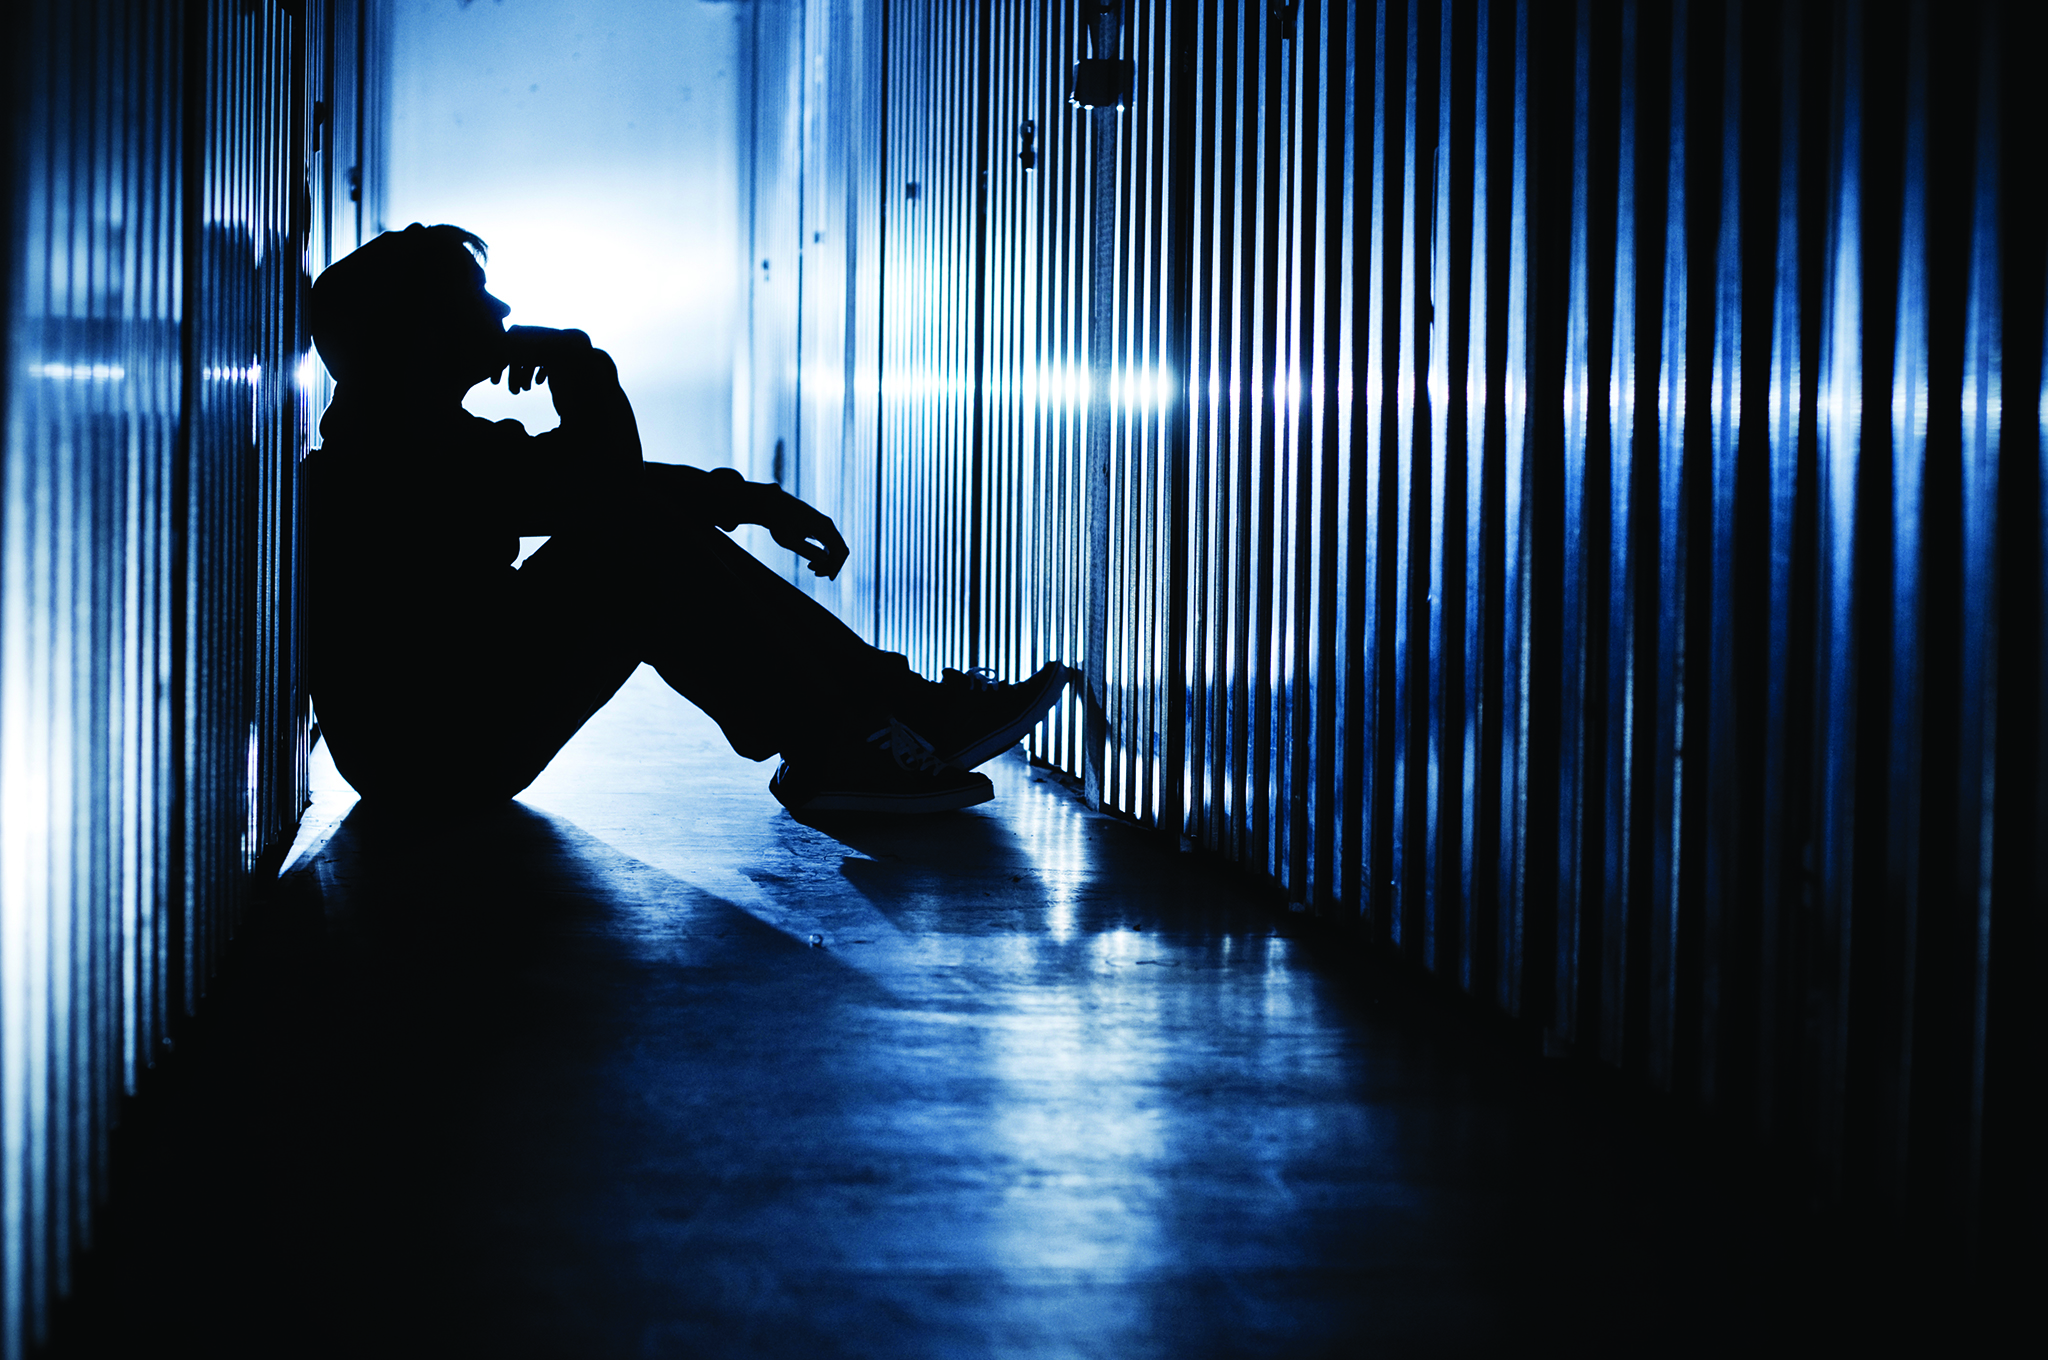 Estudo | Violência juvenil influenciada por conflitos familiares e seitas